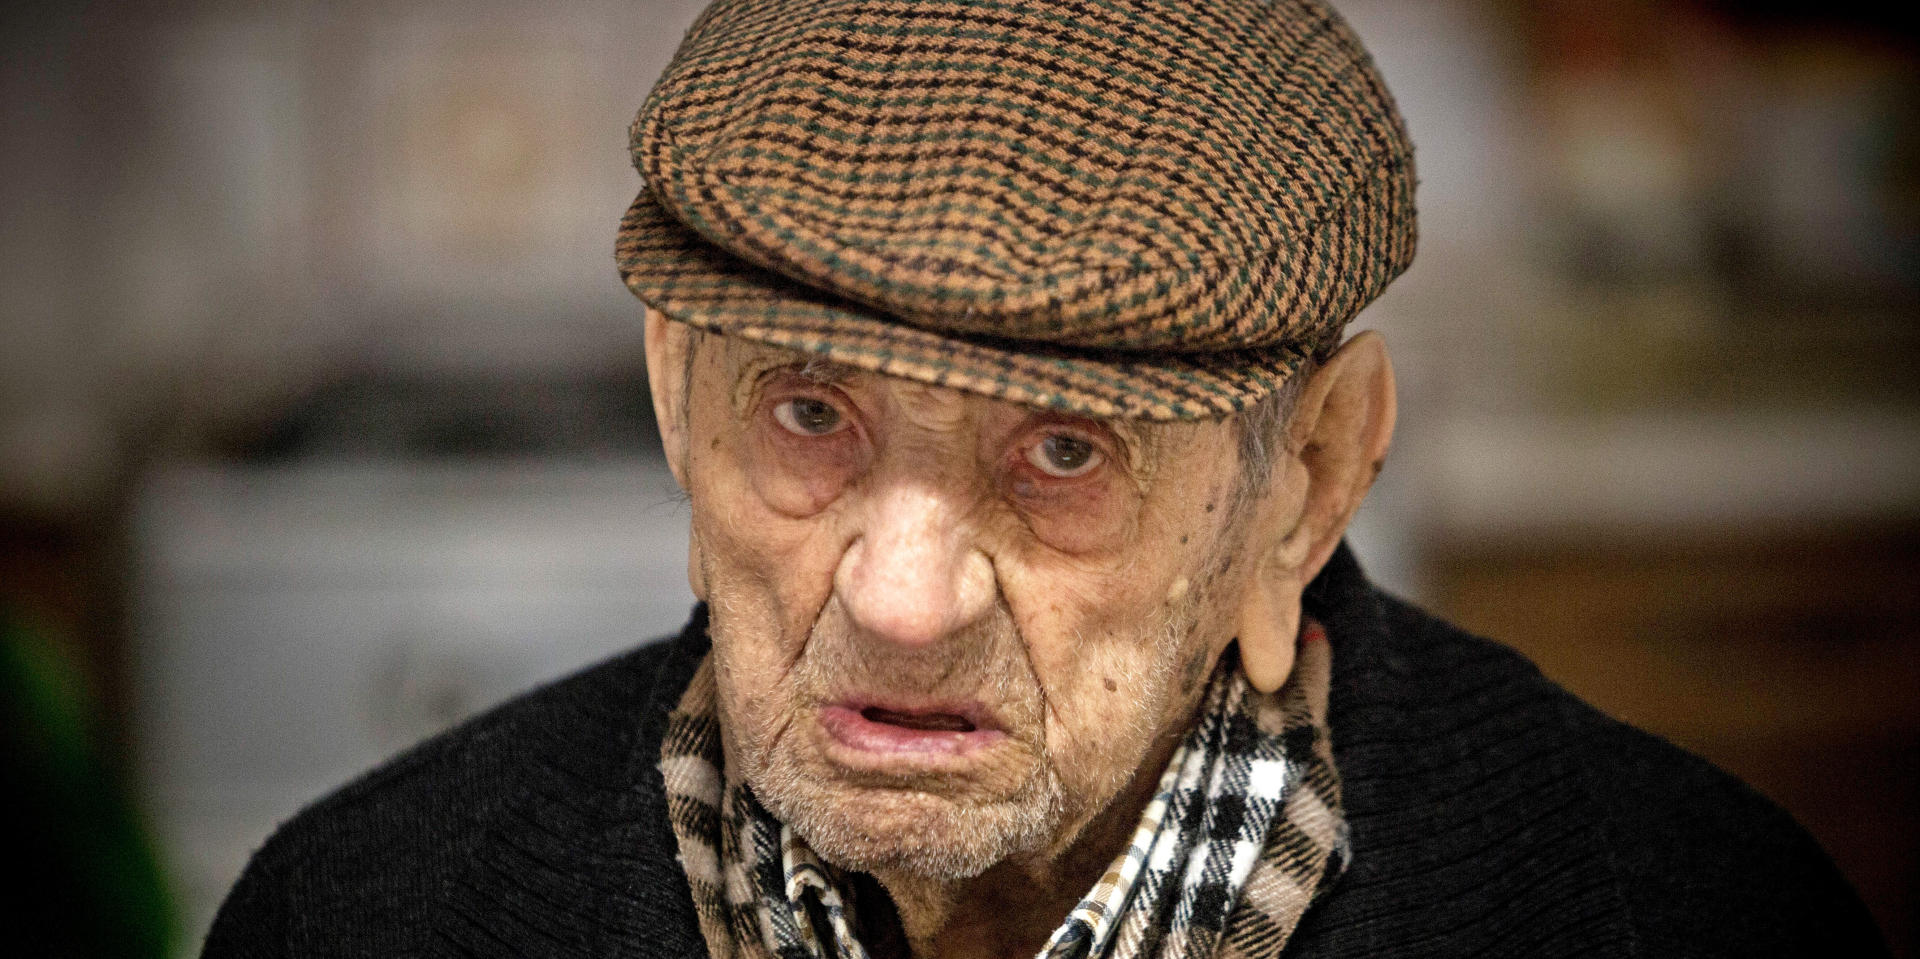 Dünyanın ən yaşlı kişisi öldü - 113 yaşında